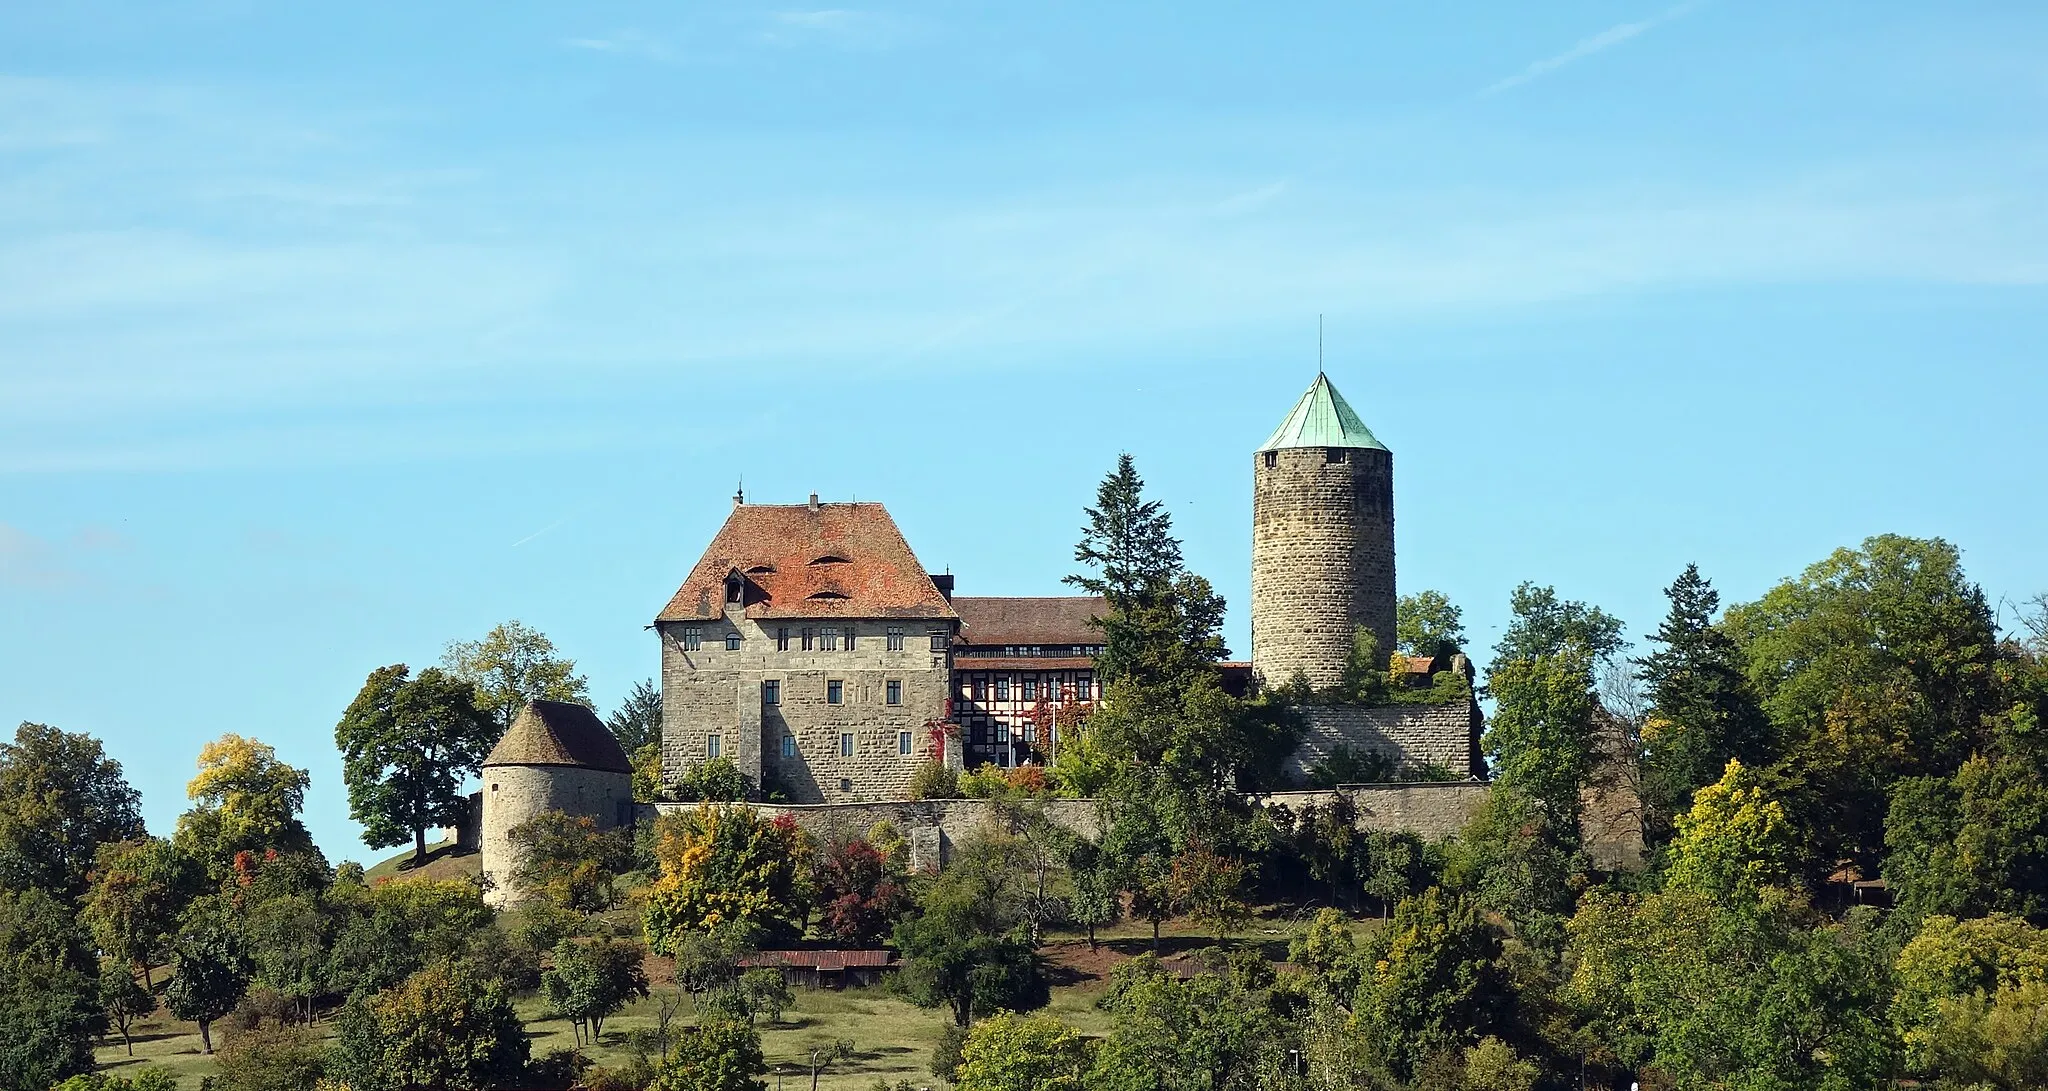 Photo showing: Die Burg Colmberg ist eine Burg auf dem 511 Meter hohen Heuberg im Altmühltal oberhalb von Colmberg in Bayern. Die Burg wurde um das Jahr 770 als kleine Palisadenburg mit hölzernem Turm errichtet und zwischen den Jahren 1150 und 1240 ausgebaut. Im Jahre 1964 ging die Burg in den Besitz der Familie Unbehauen aus Colmberg über, die auf der Burg ein Hotel mit Restaurant betreiben.